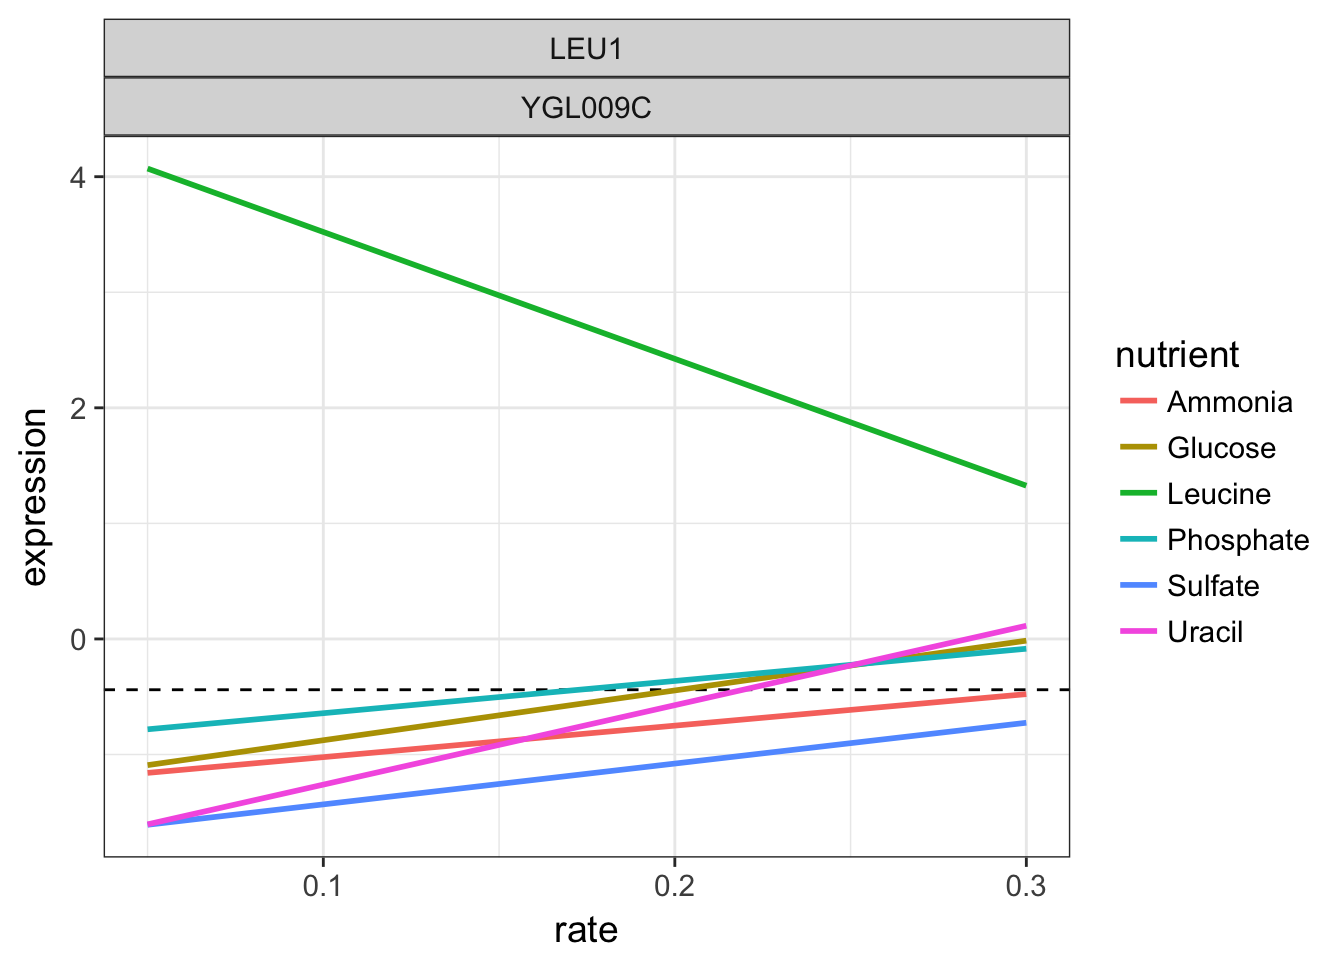 LEU1 linear models per nutrient